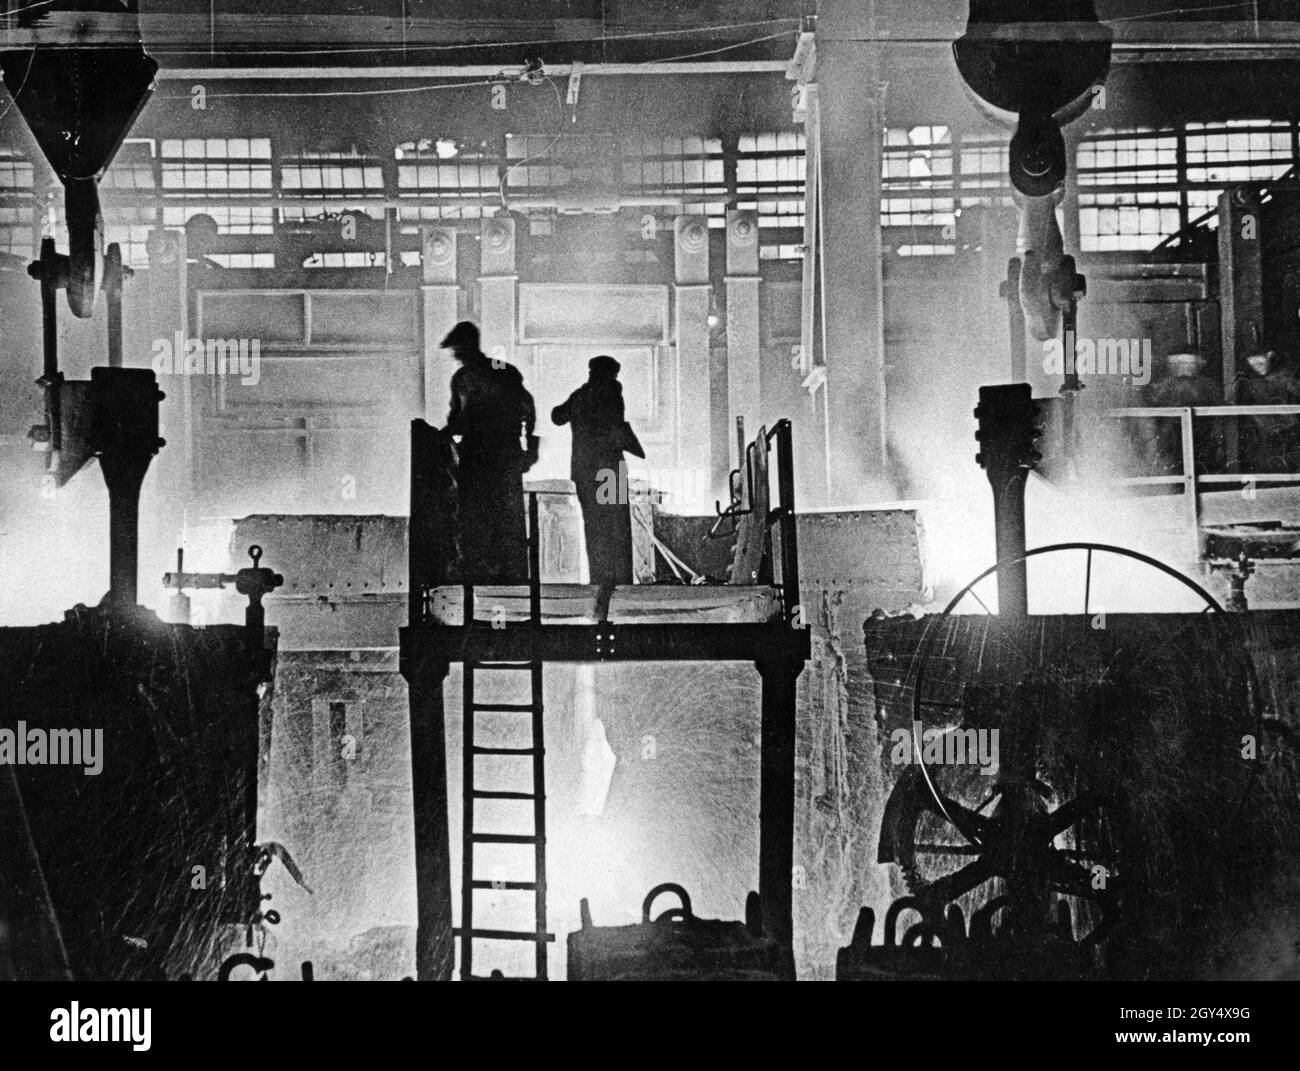 Acciaierie nella zona della Ruhr intorno al 1930 - Fotografia del fotogiornalista berlinese Felix H. Man. [traduzione automatizzata] Foto Stock